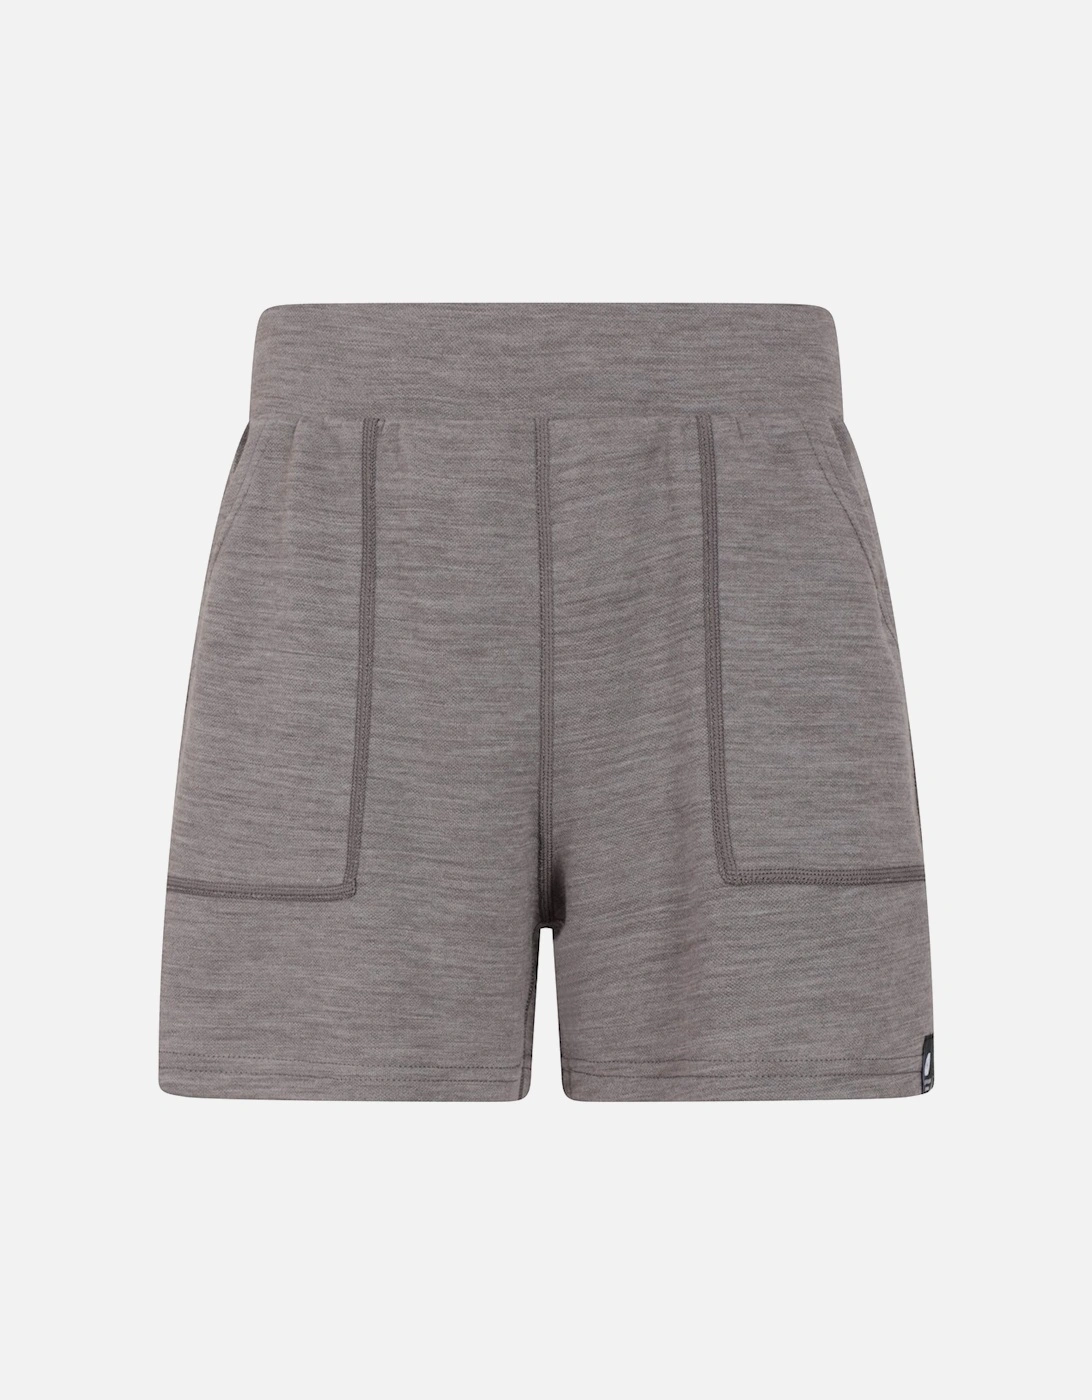 Womens/Ladies Merino Wool Sweat Shorts, 5 of 4